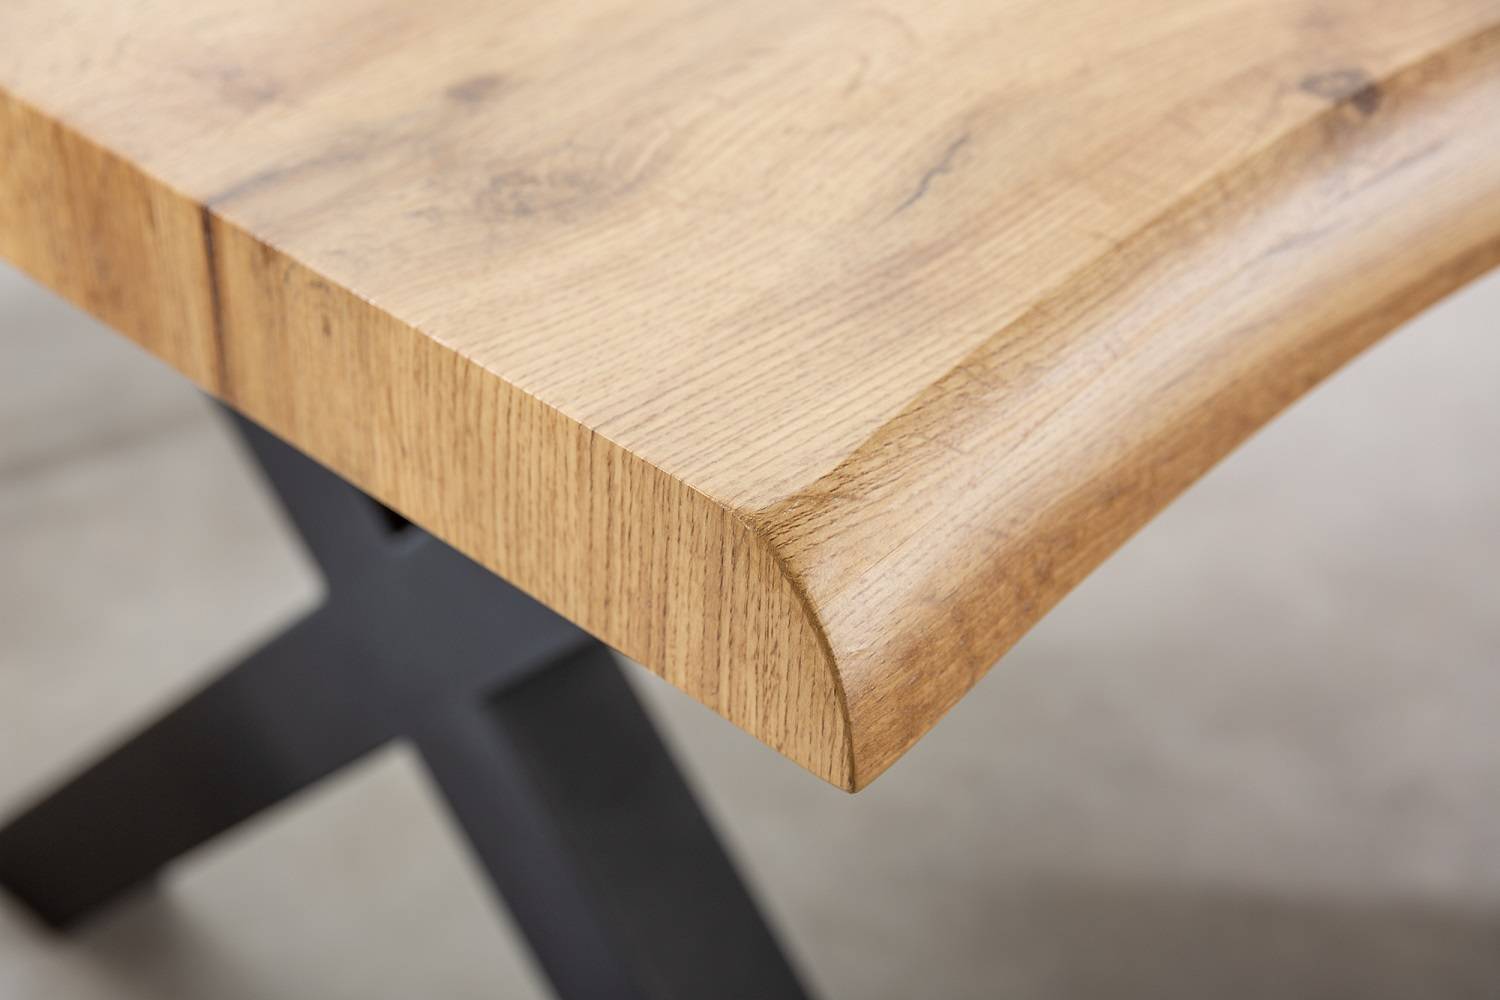 Designový jídelní stůl Kaniesa 200 cm hnědý - vzor divoký dub